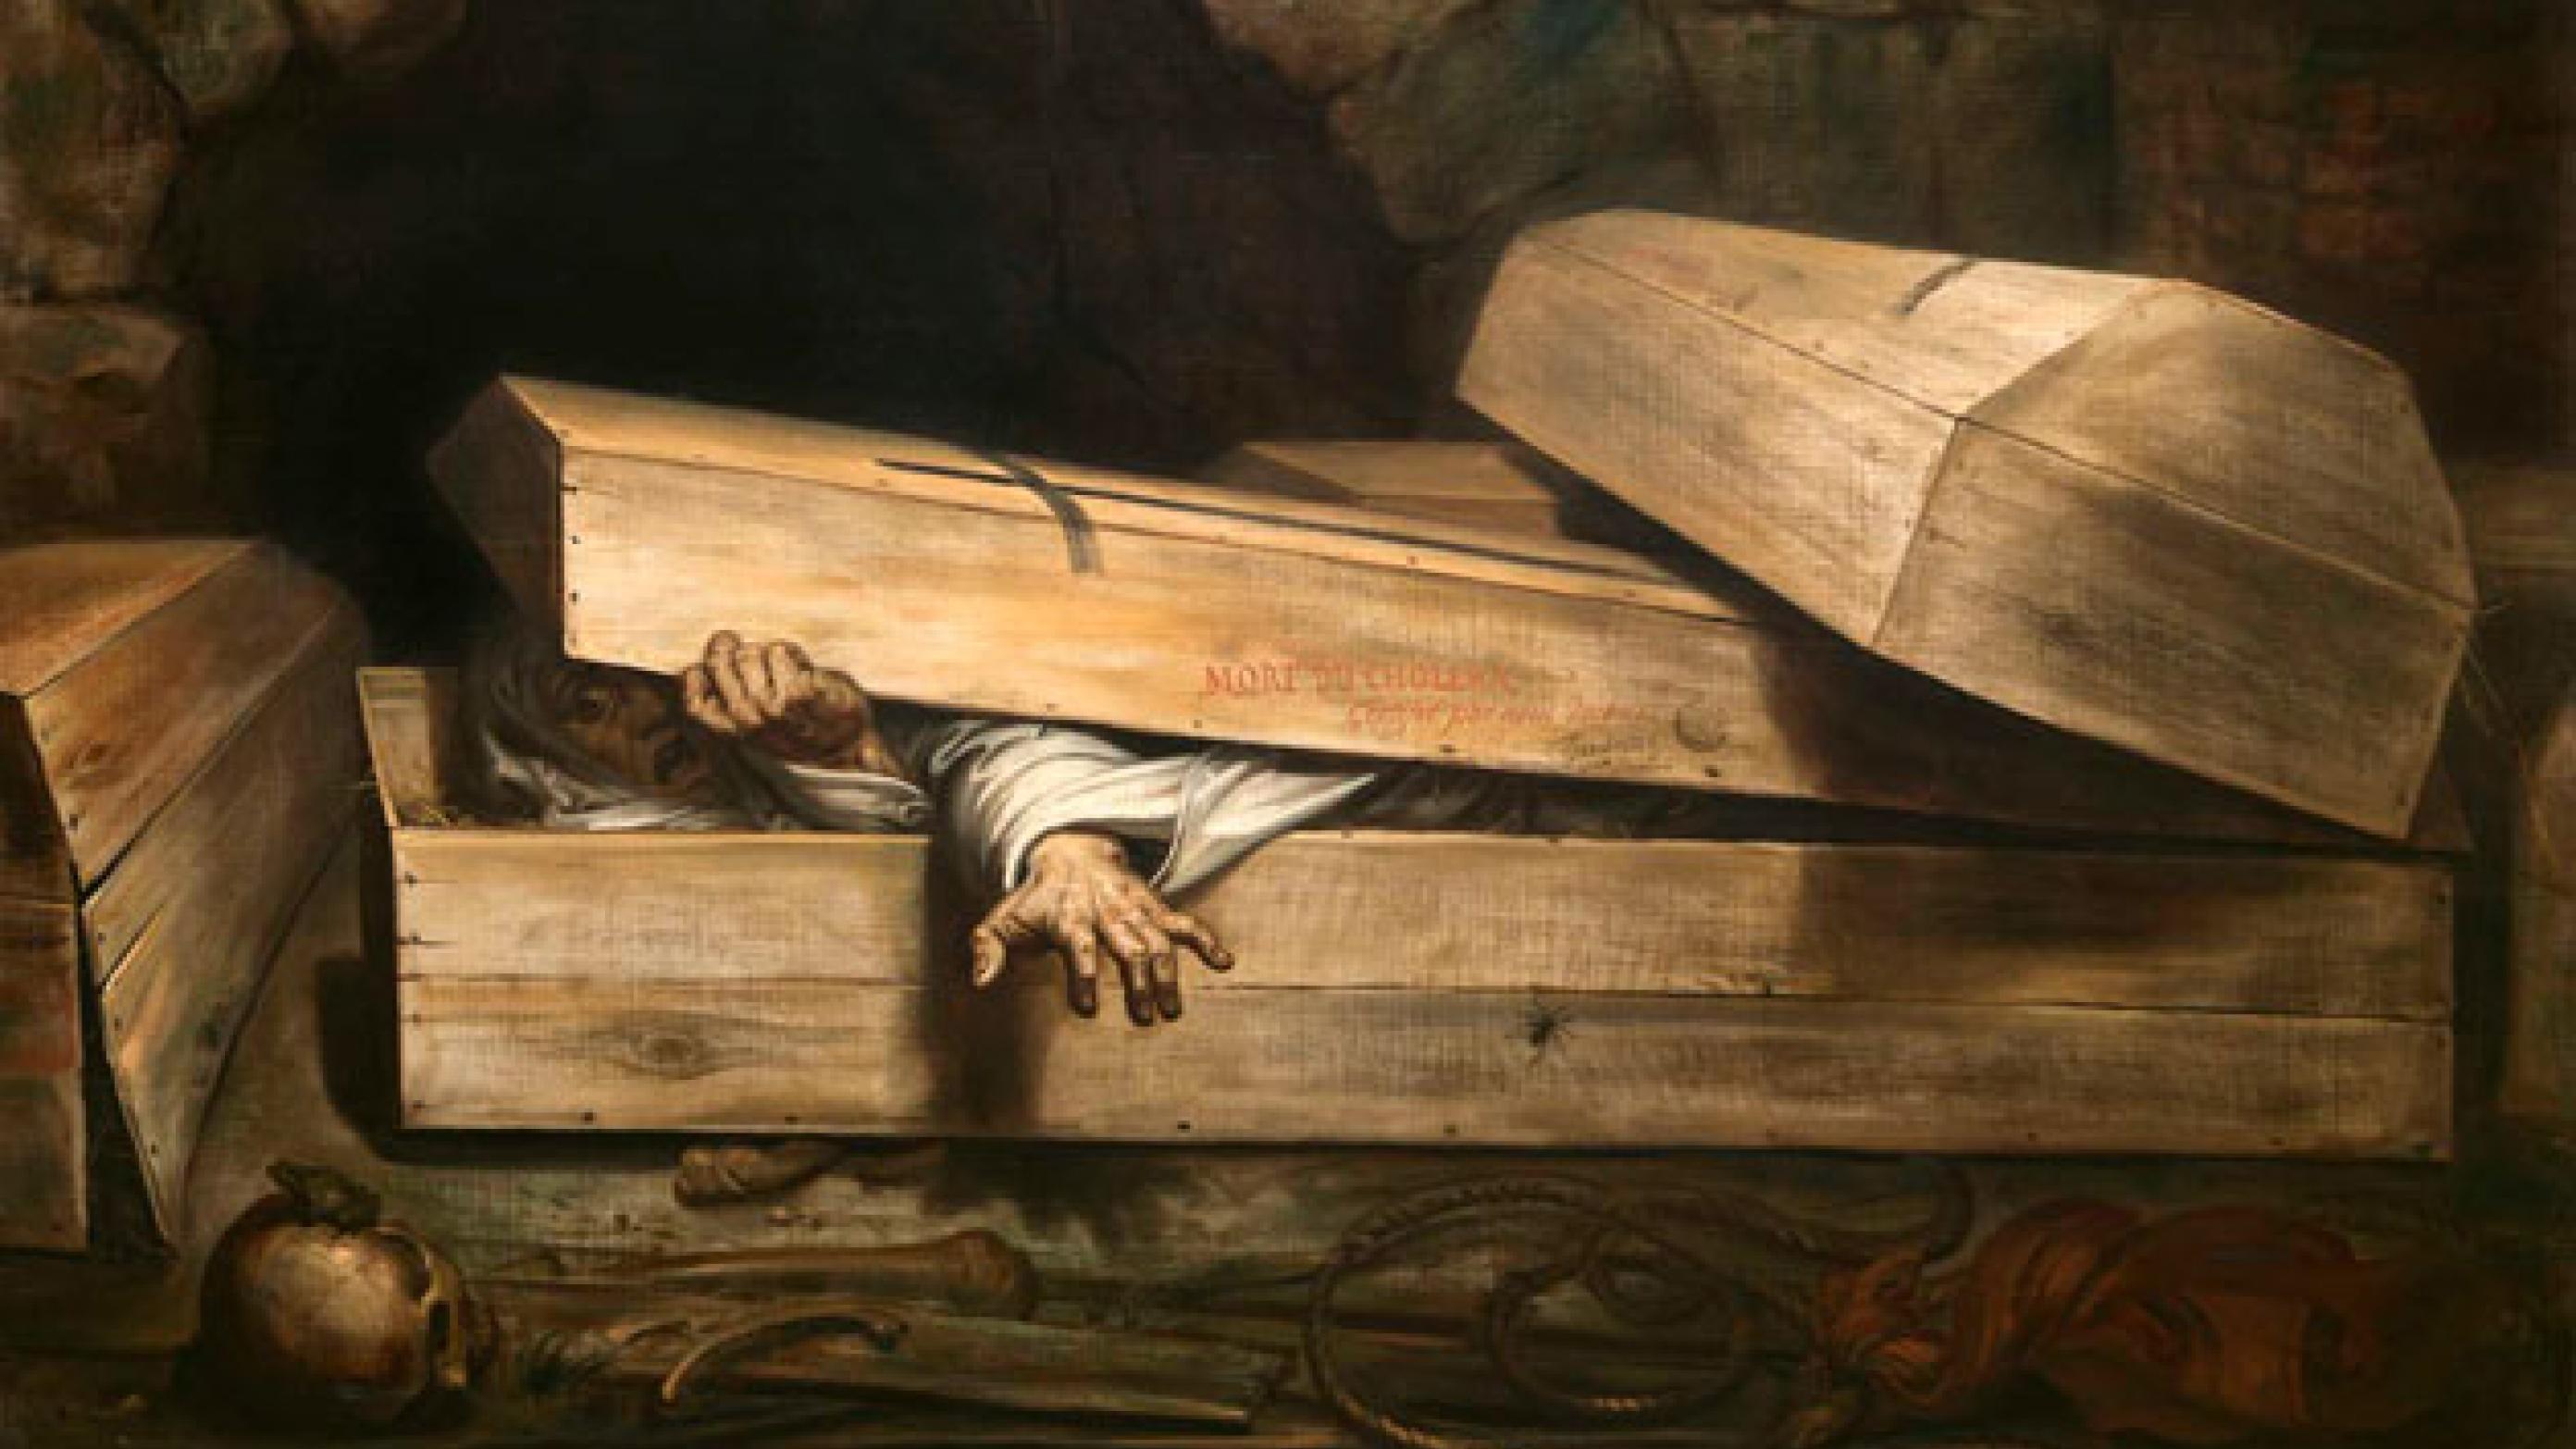 Rædslen for den levende begravelse afspejlede sig i litteraturen, f.eks. i Edgar Allan Poes gyserhistorier, og som her, i kunsten: »Den forhastede begravelse«. Oliemaleri, 1854 af Antoine Wiertz (Wiertz Museum, Bruxelles).